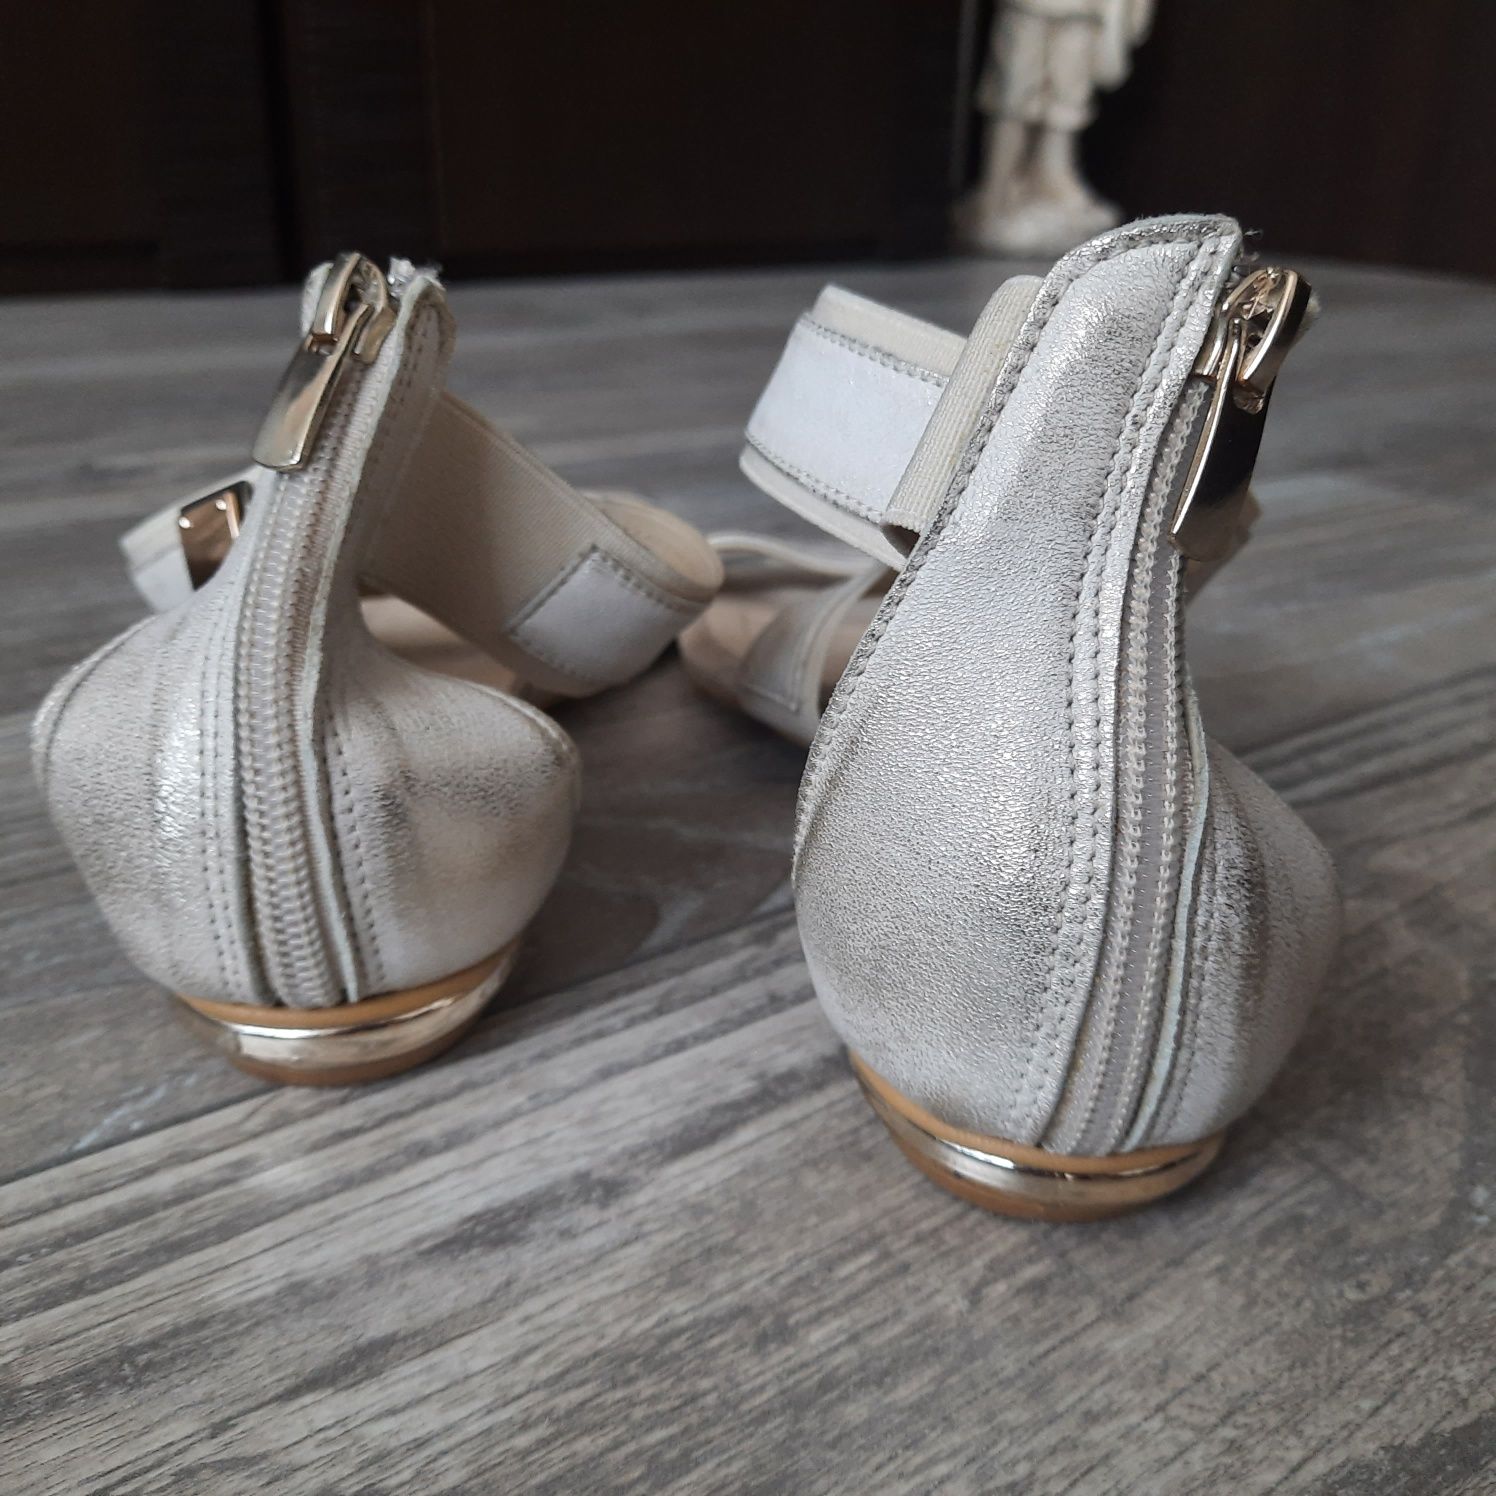 Sandały Caroline Italy r. 40 wkładka 25,5 cm